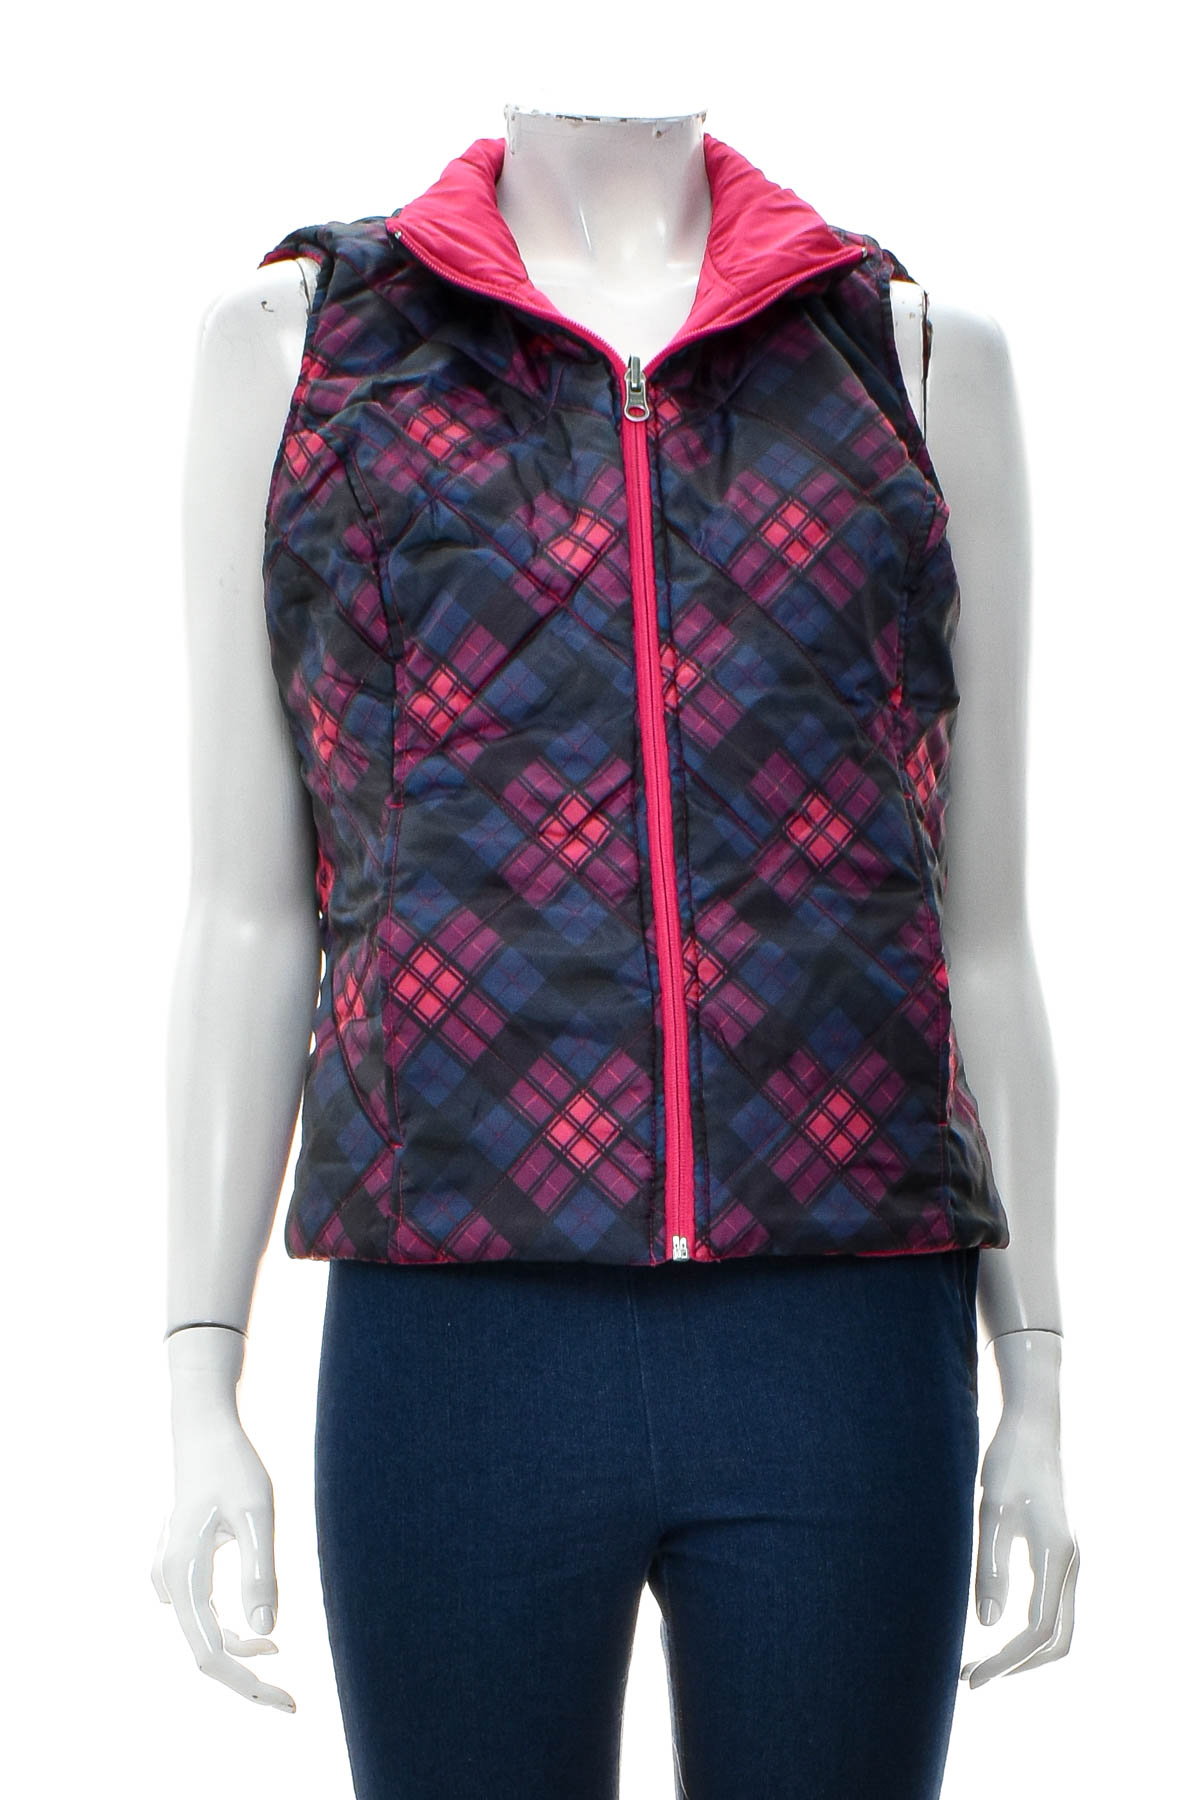 Women's vest reversible  - SJB ACTIVE - 0